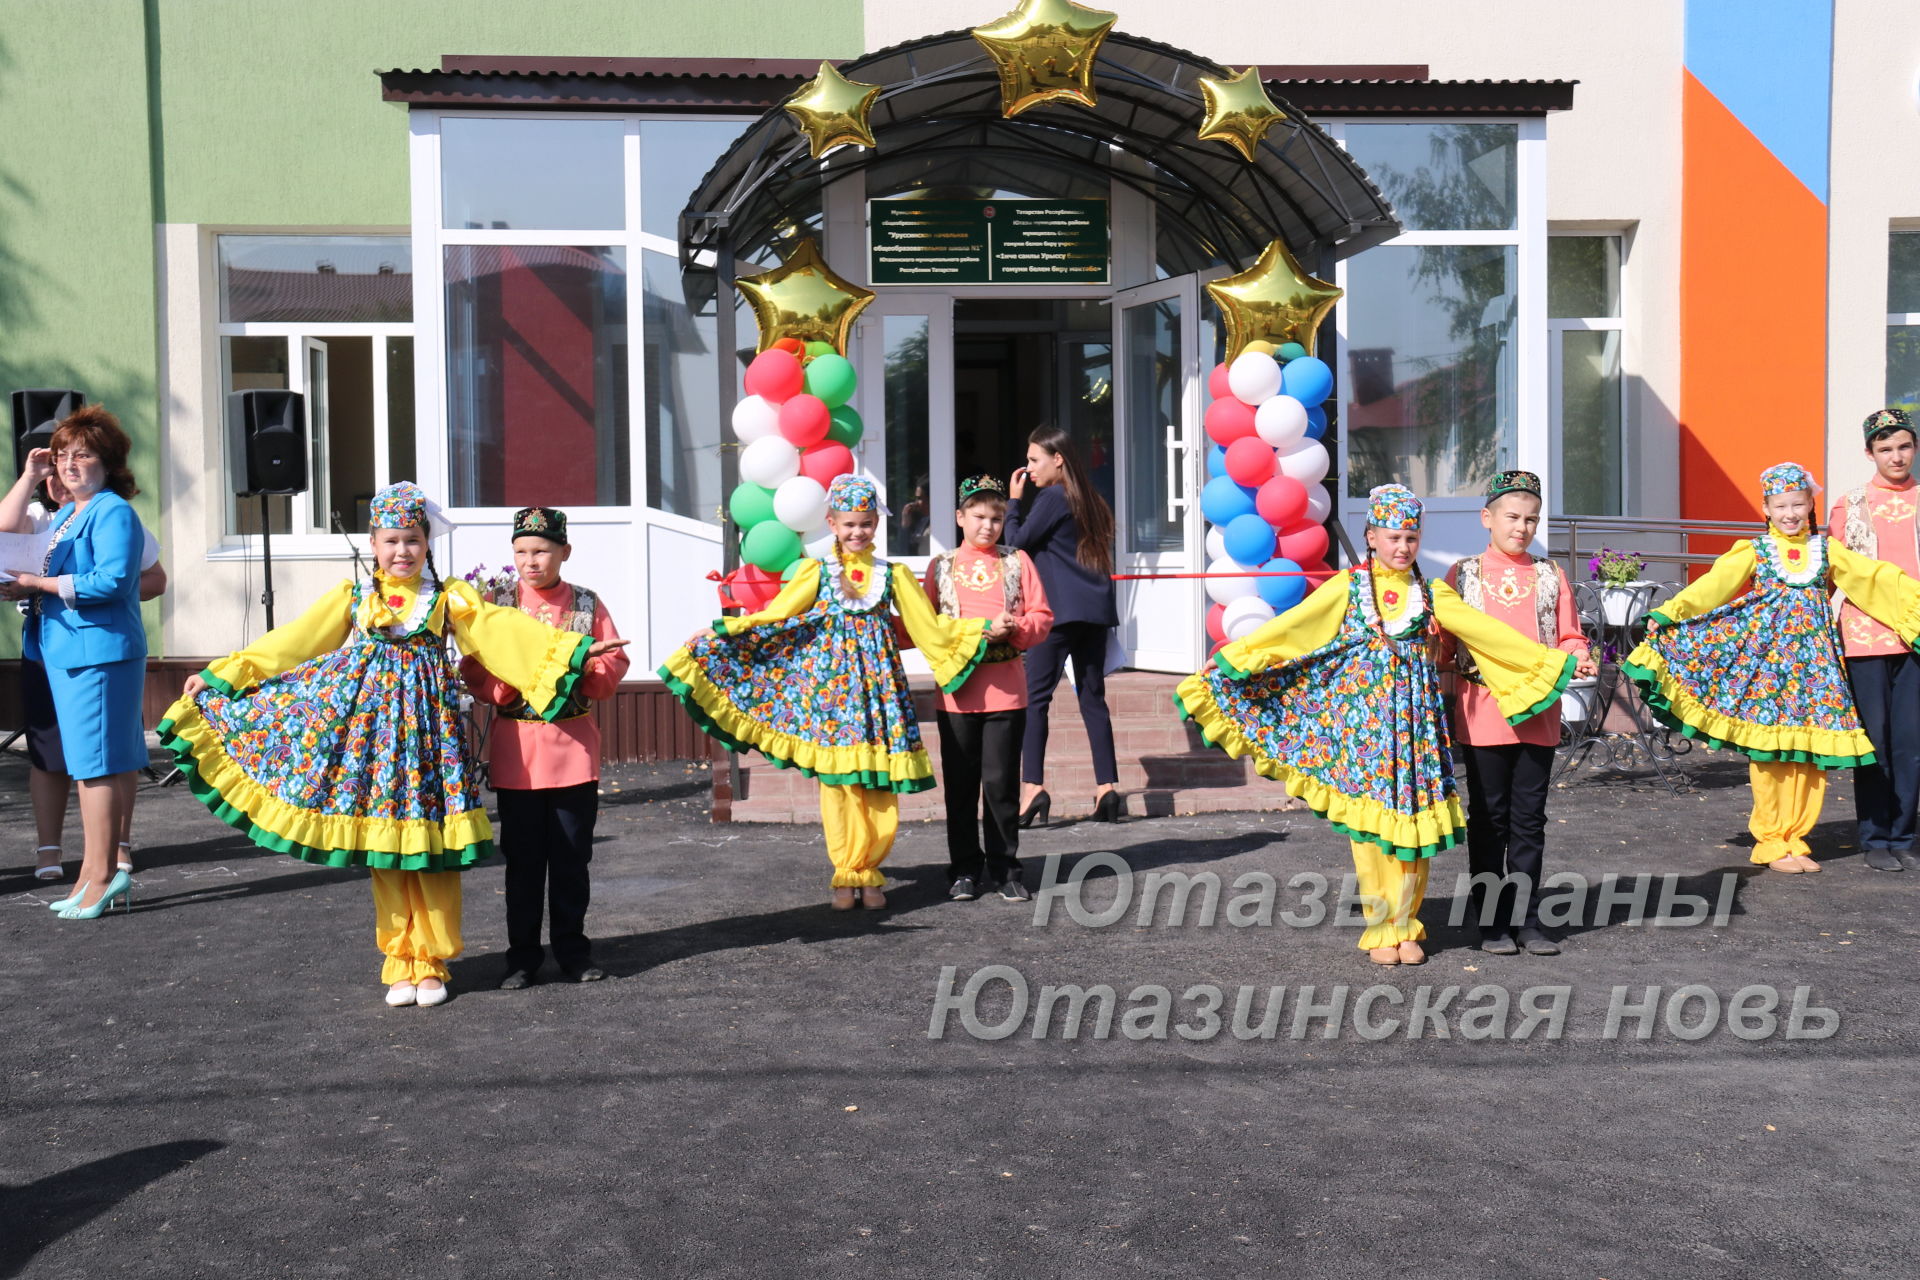 В Уруссу состоялось торжественное открытие начальной школы